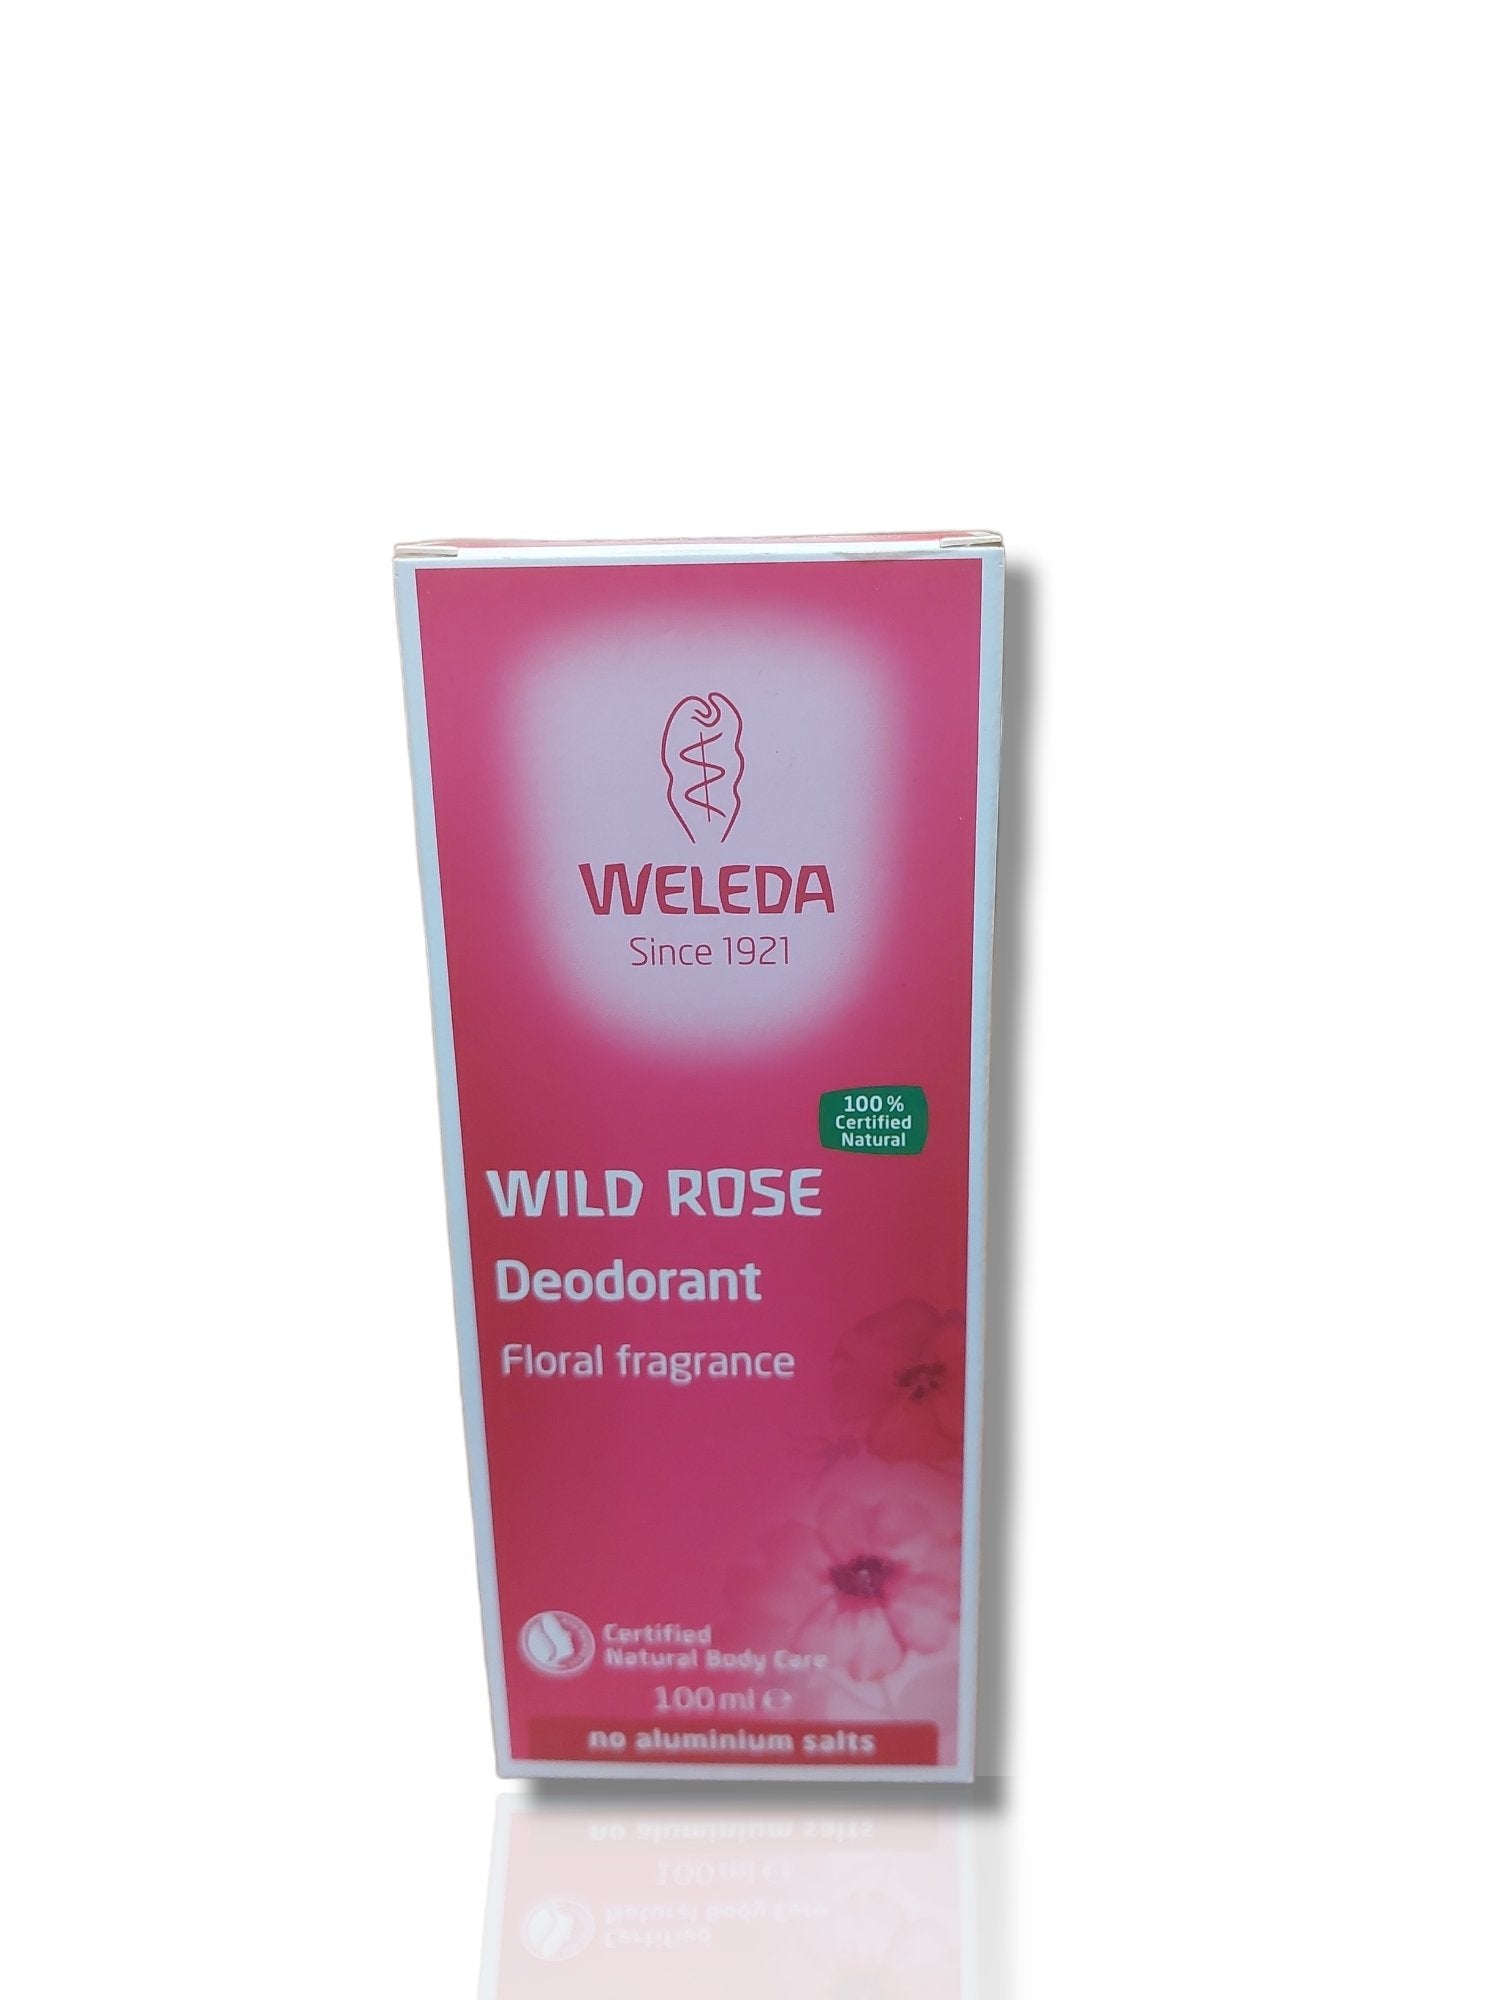 Weleda Wild Rose Deodorant - HealthyLiving.ie